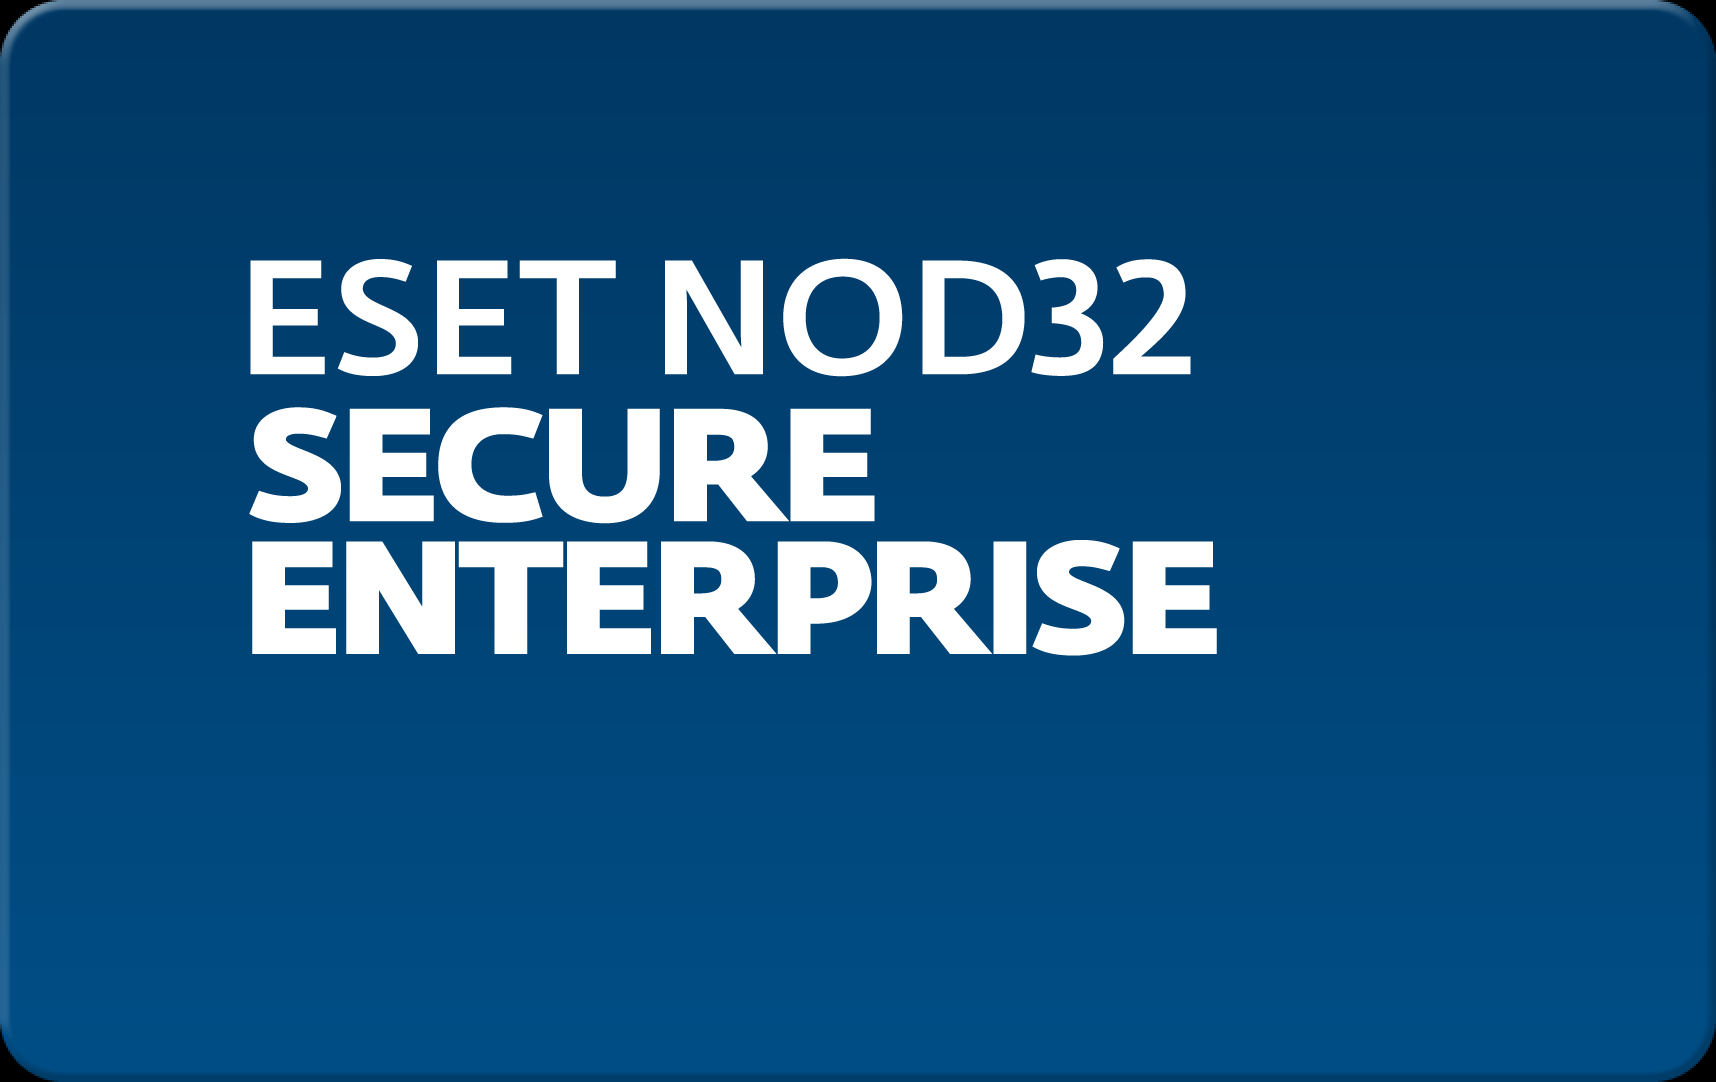        Eset NOD32 Secure Enterprise  176  NOD32-ESE-NS-1-176  #1